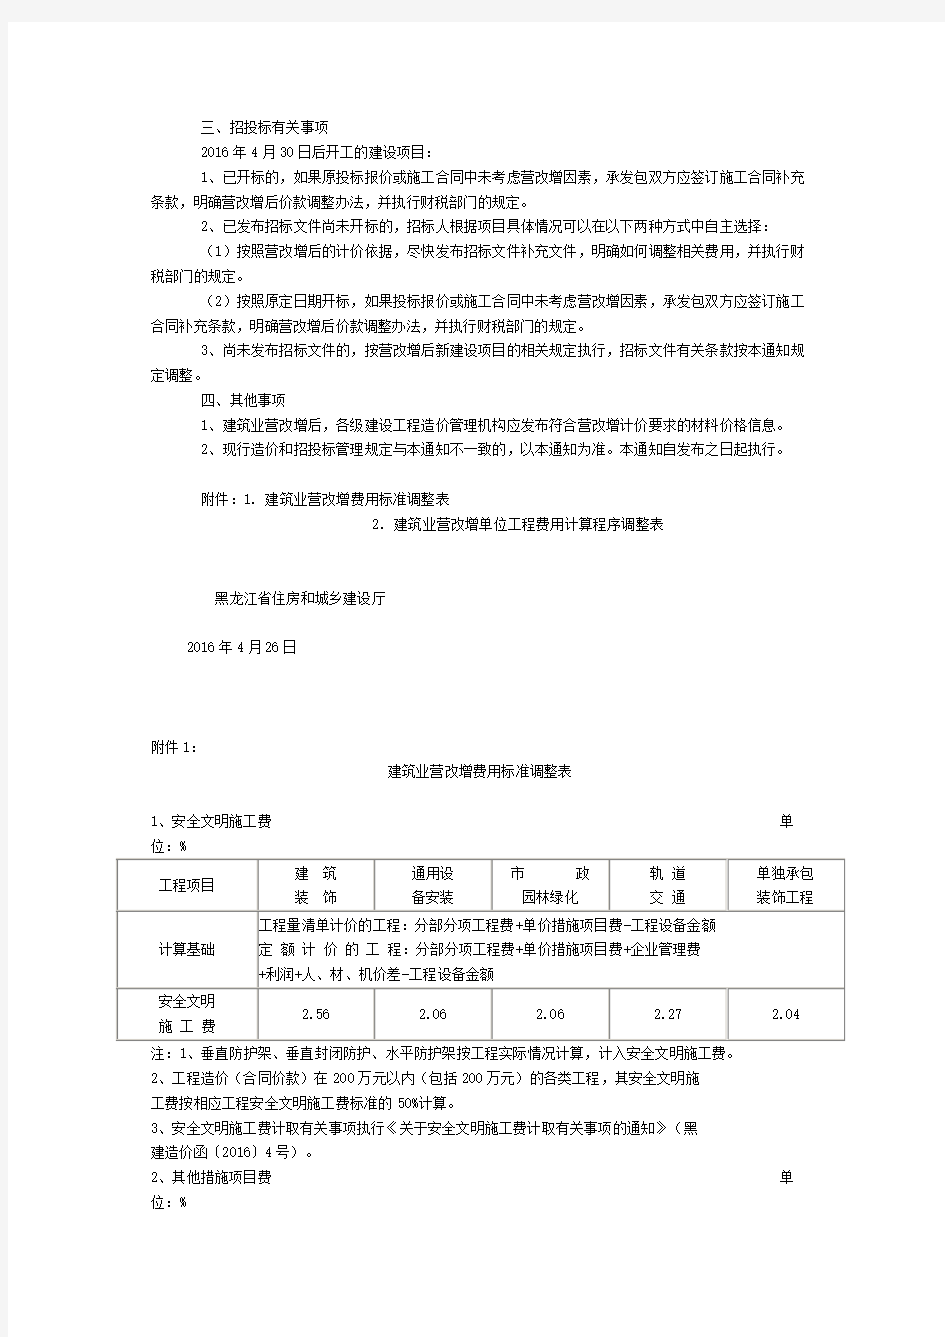 关于黑龙江省建筑业营业税改征增值税调整建设工程计价依据和招投标有关事项的通知